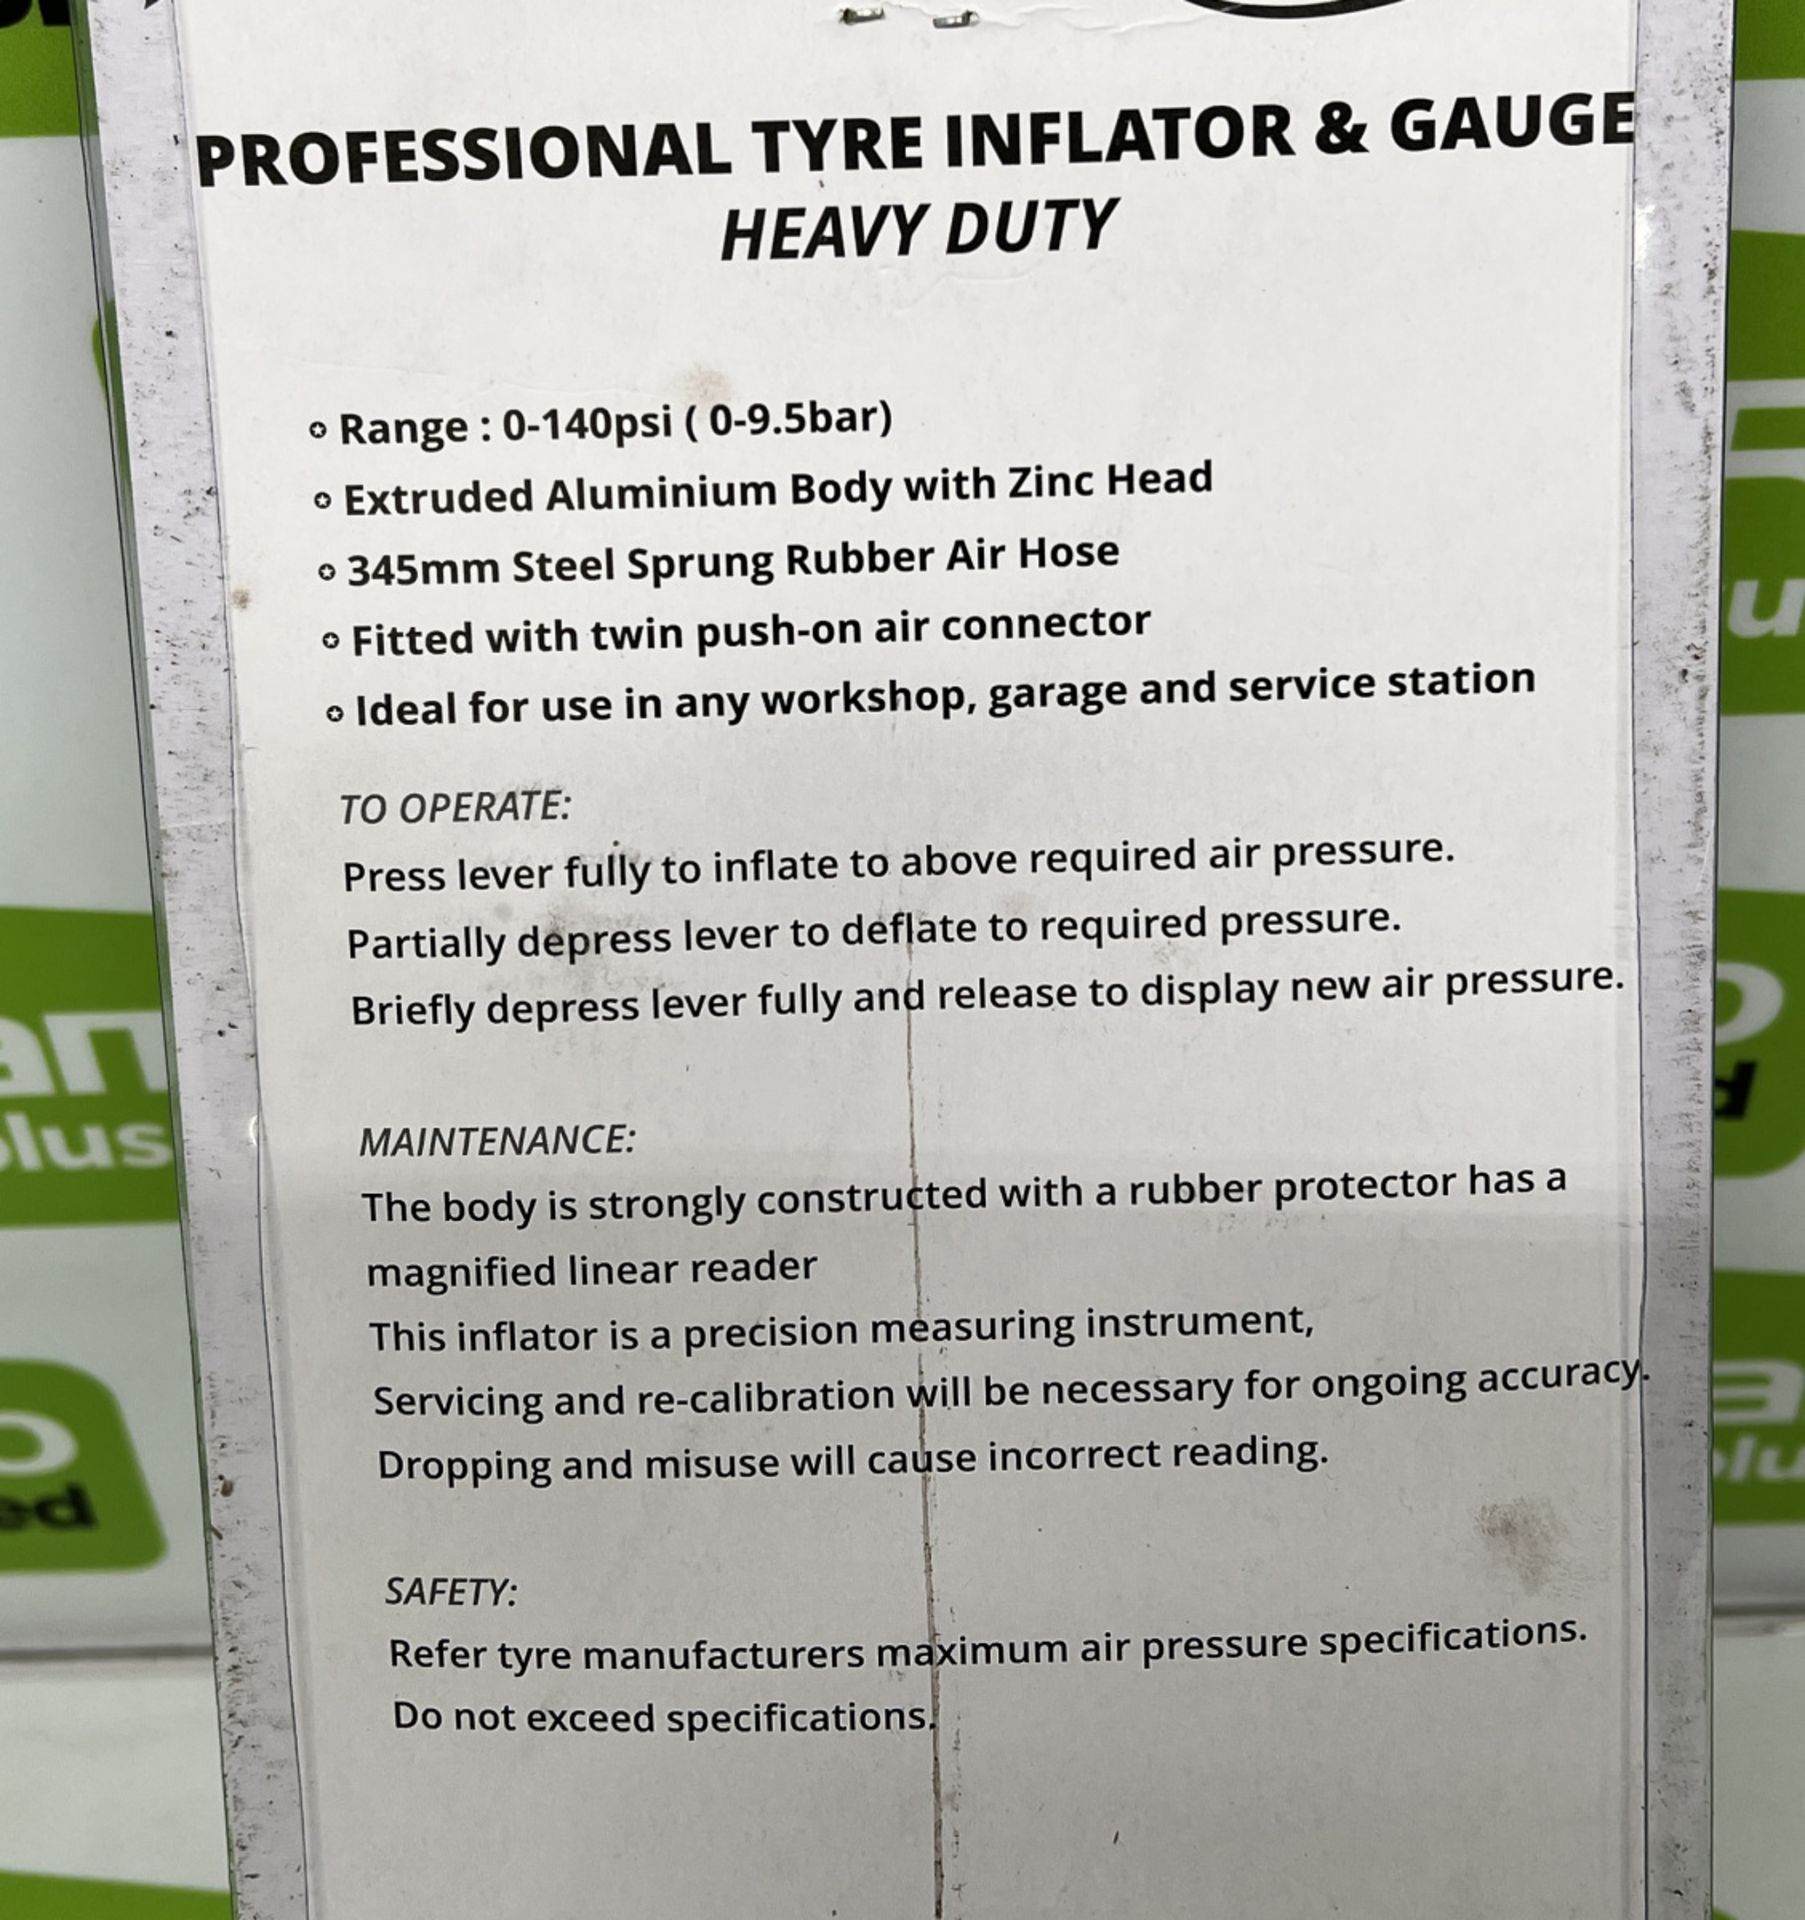 Neilsen professional tyre inflator & gauge CT2309 - Image 2 of 2